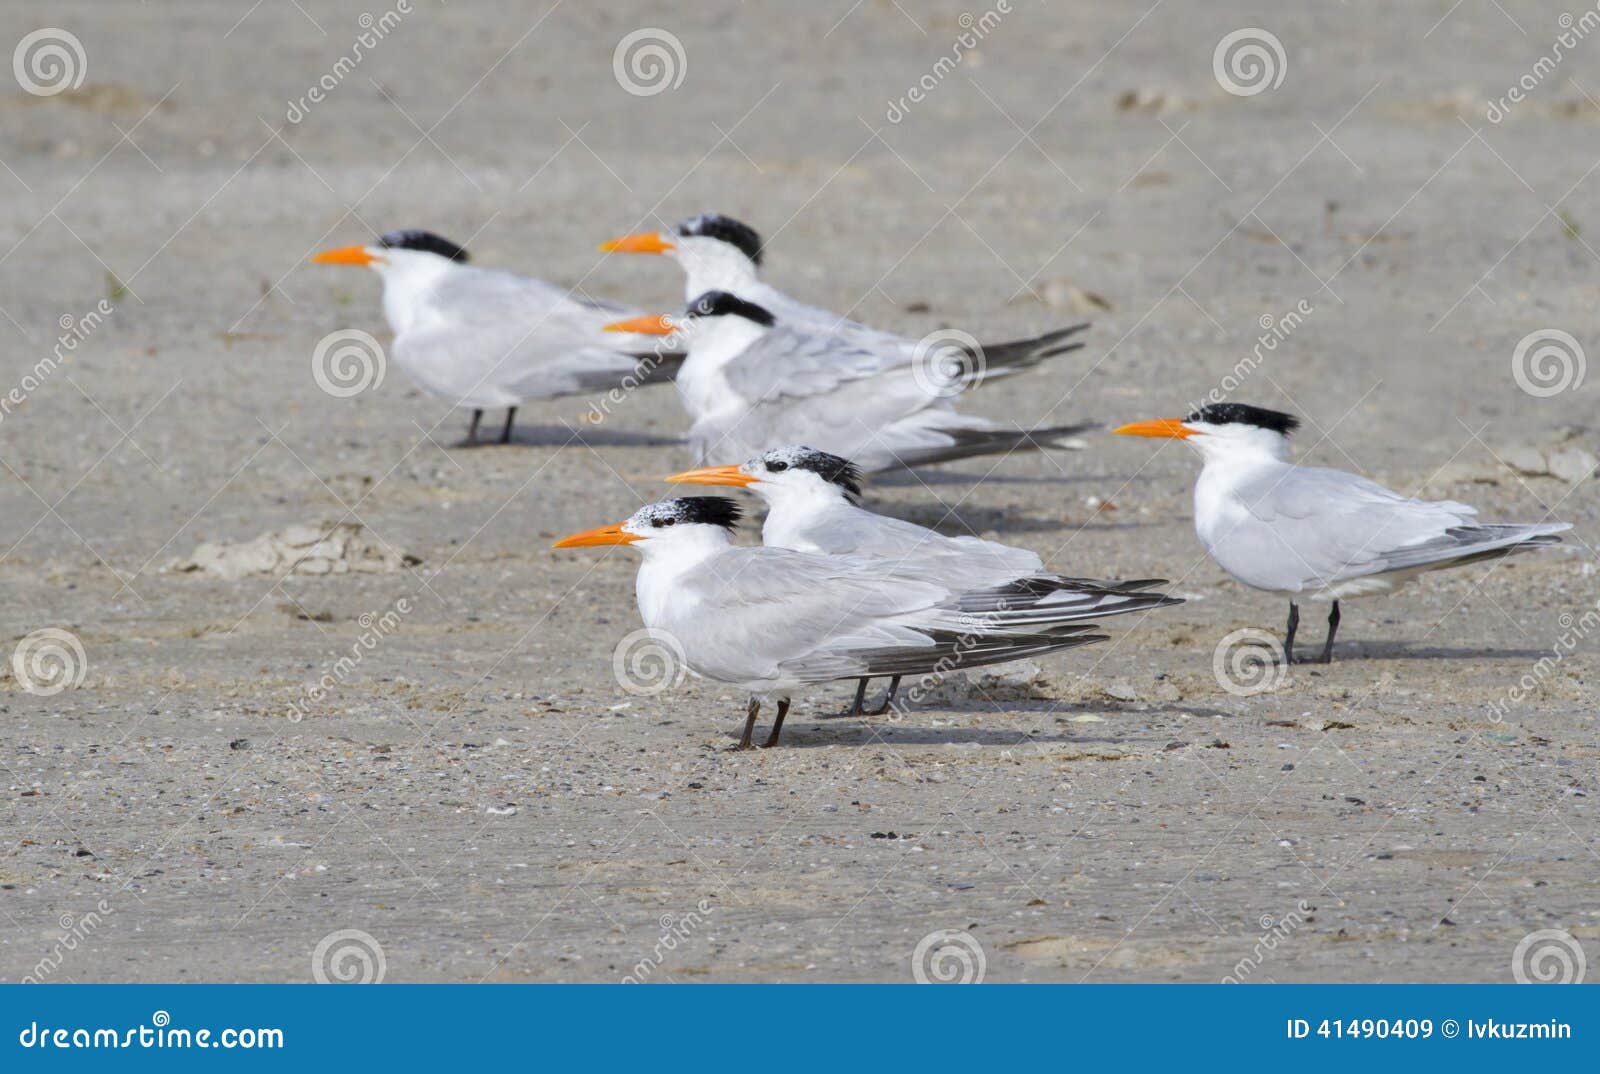 a group of royal terns (sterna maxima)